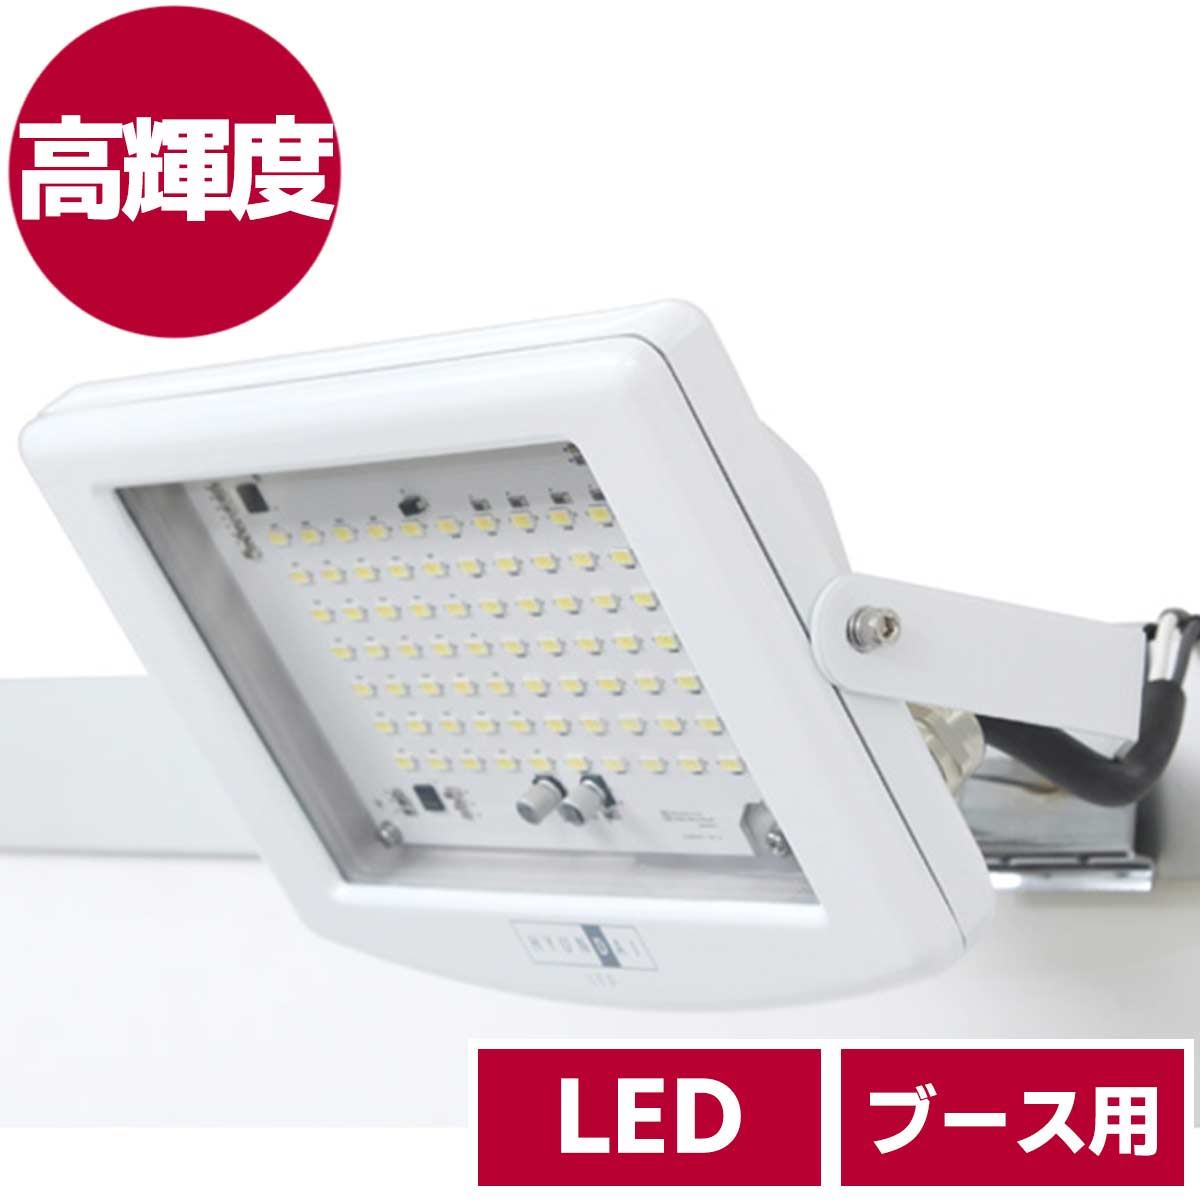 ブース用LED高輝度スポットライト(昼白色)